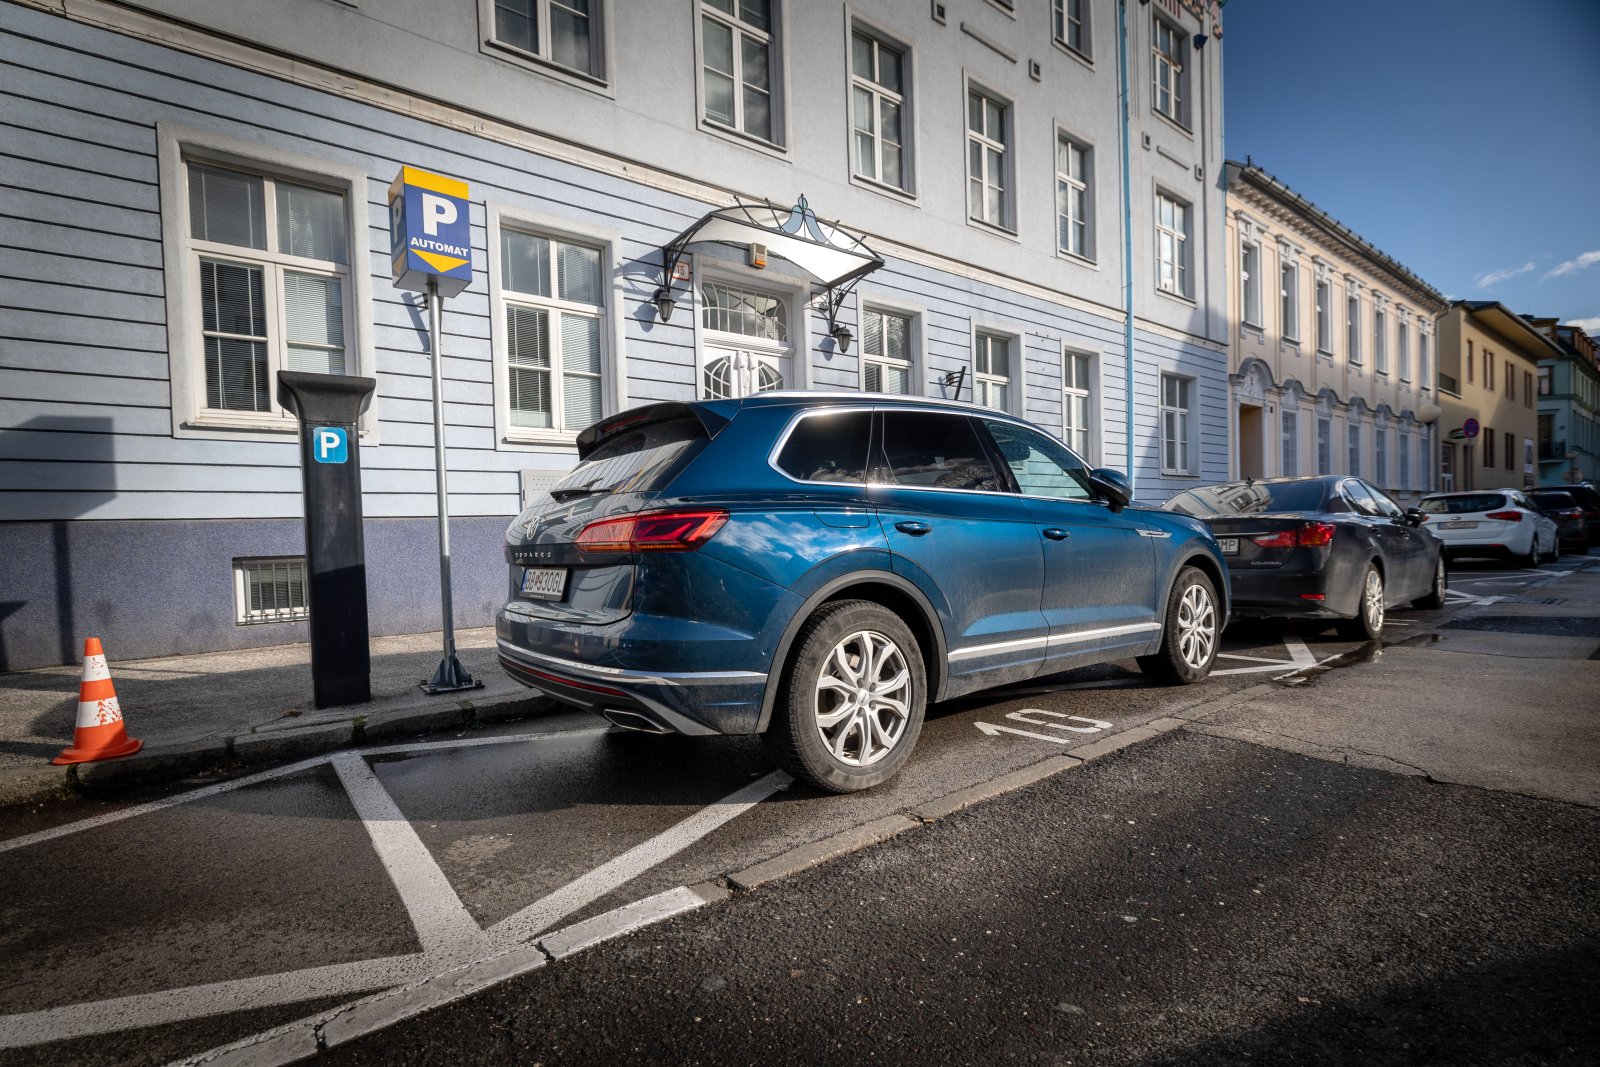 Pred centrálou Hlasu stojí luxusný Volkswagen Touareg, na ktorom Petra Pellegriniho vozí šofér, oficiálne zamestnaný v SAD Zvolen. Foto N - Tomáš Benedikovič